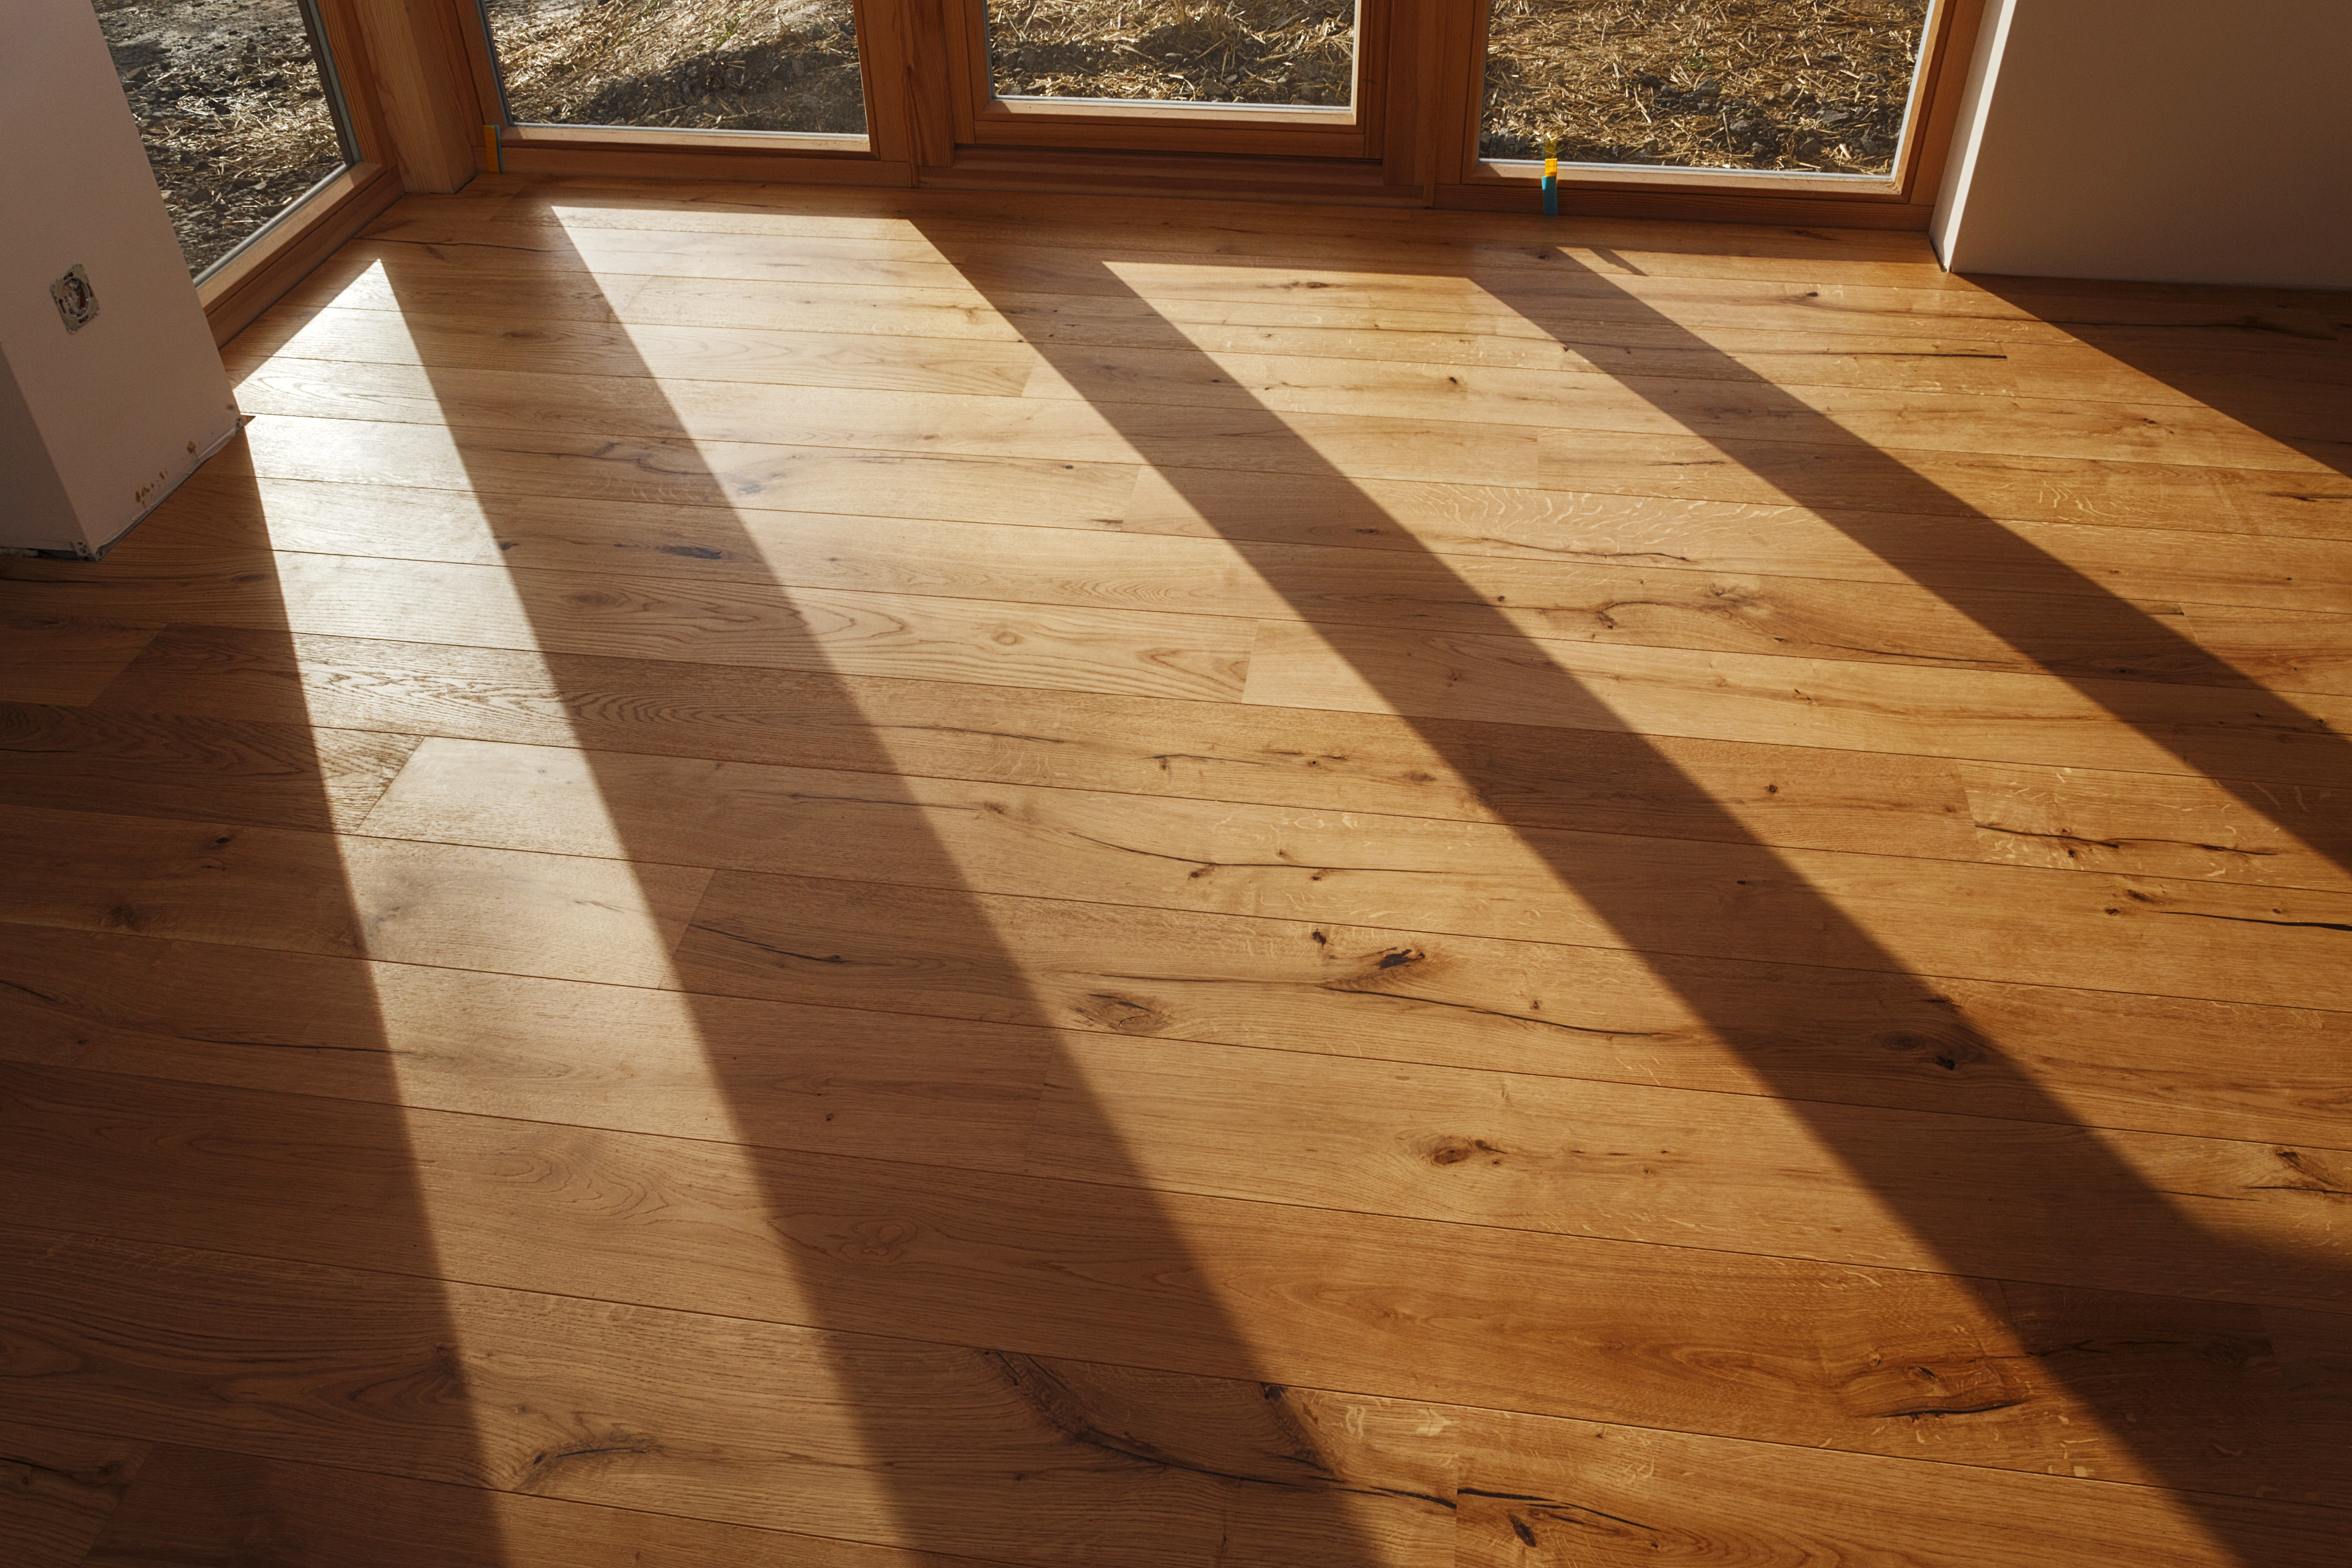 Wood Flooring Hardwood Versus Engineered Wood And Laminate Money